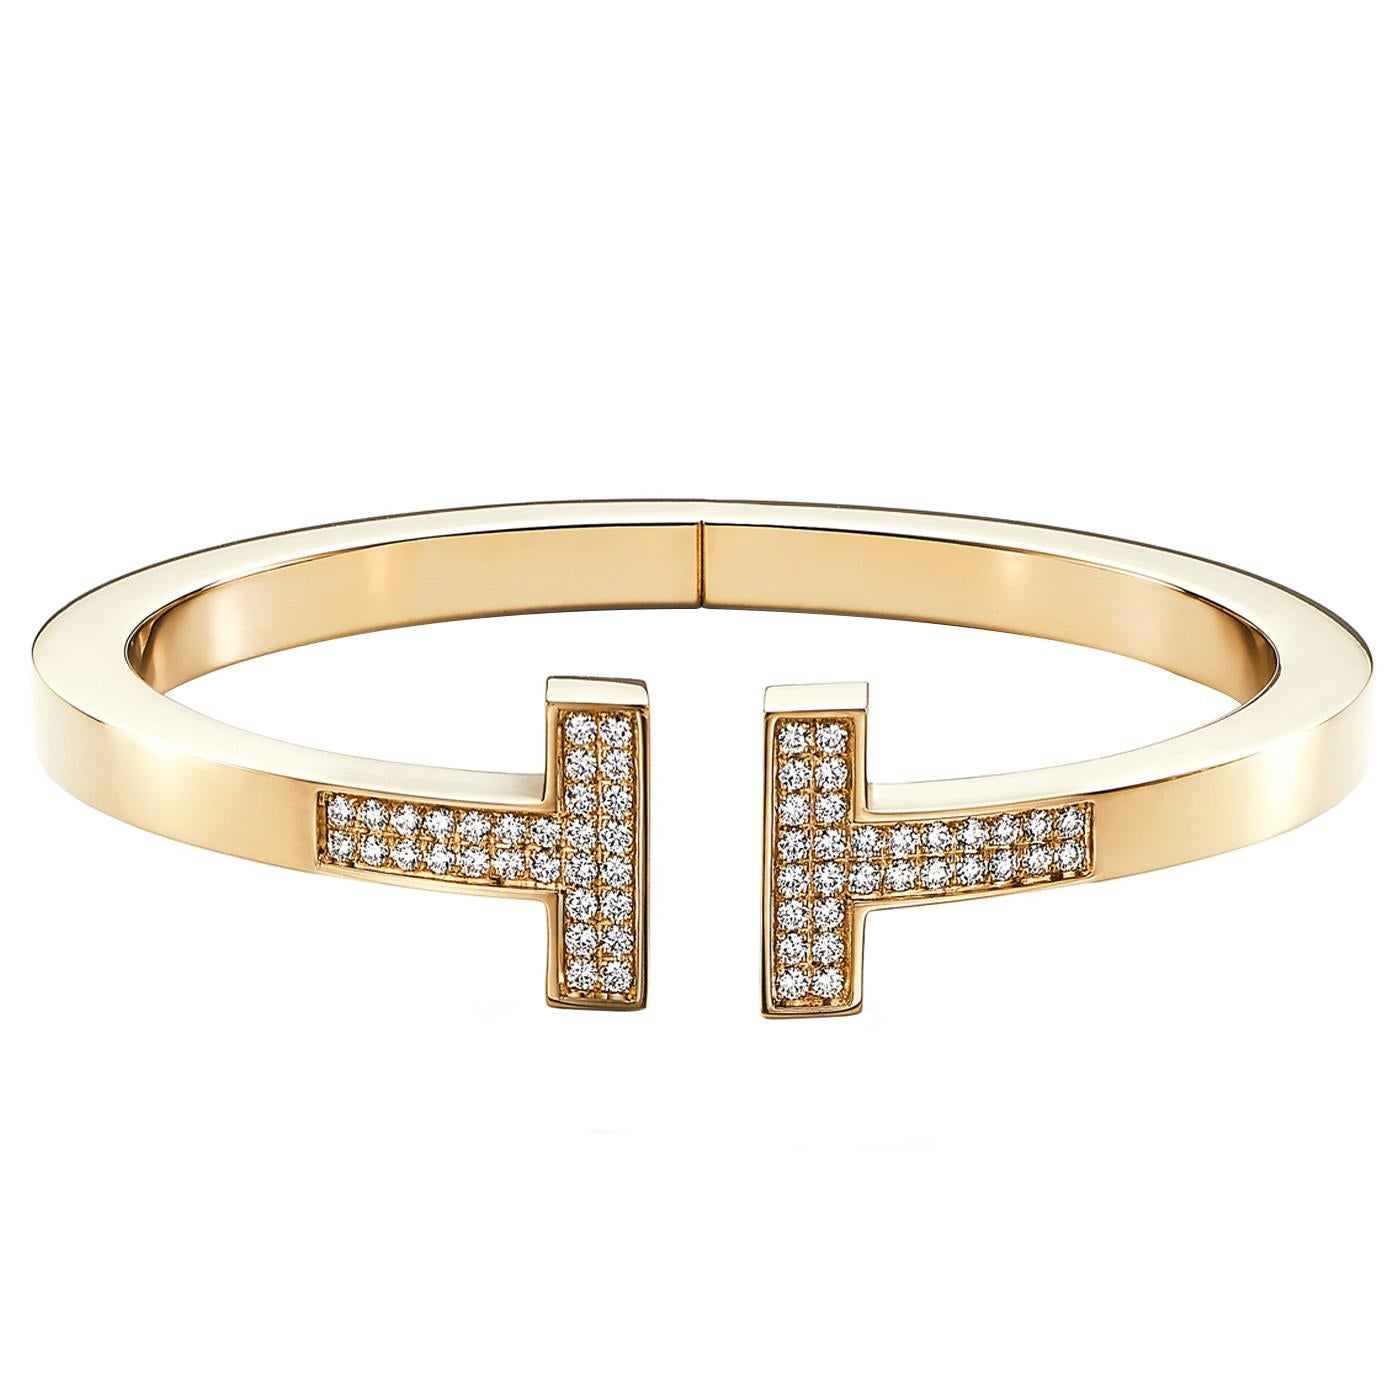 Des diamants pavés brillent dans ce bracelet au design audacieux. Aussi polyvalente qu'emblématique, la collection Tiffany T est un rappel tangible des liens que nous ressentons mais ne pouvons pas toujours voir. Associez ce bracelet en diamants à